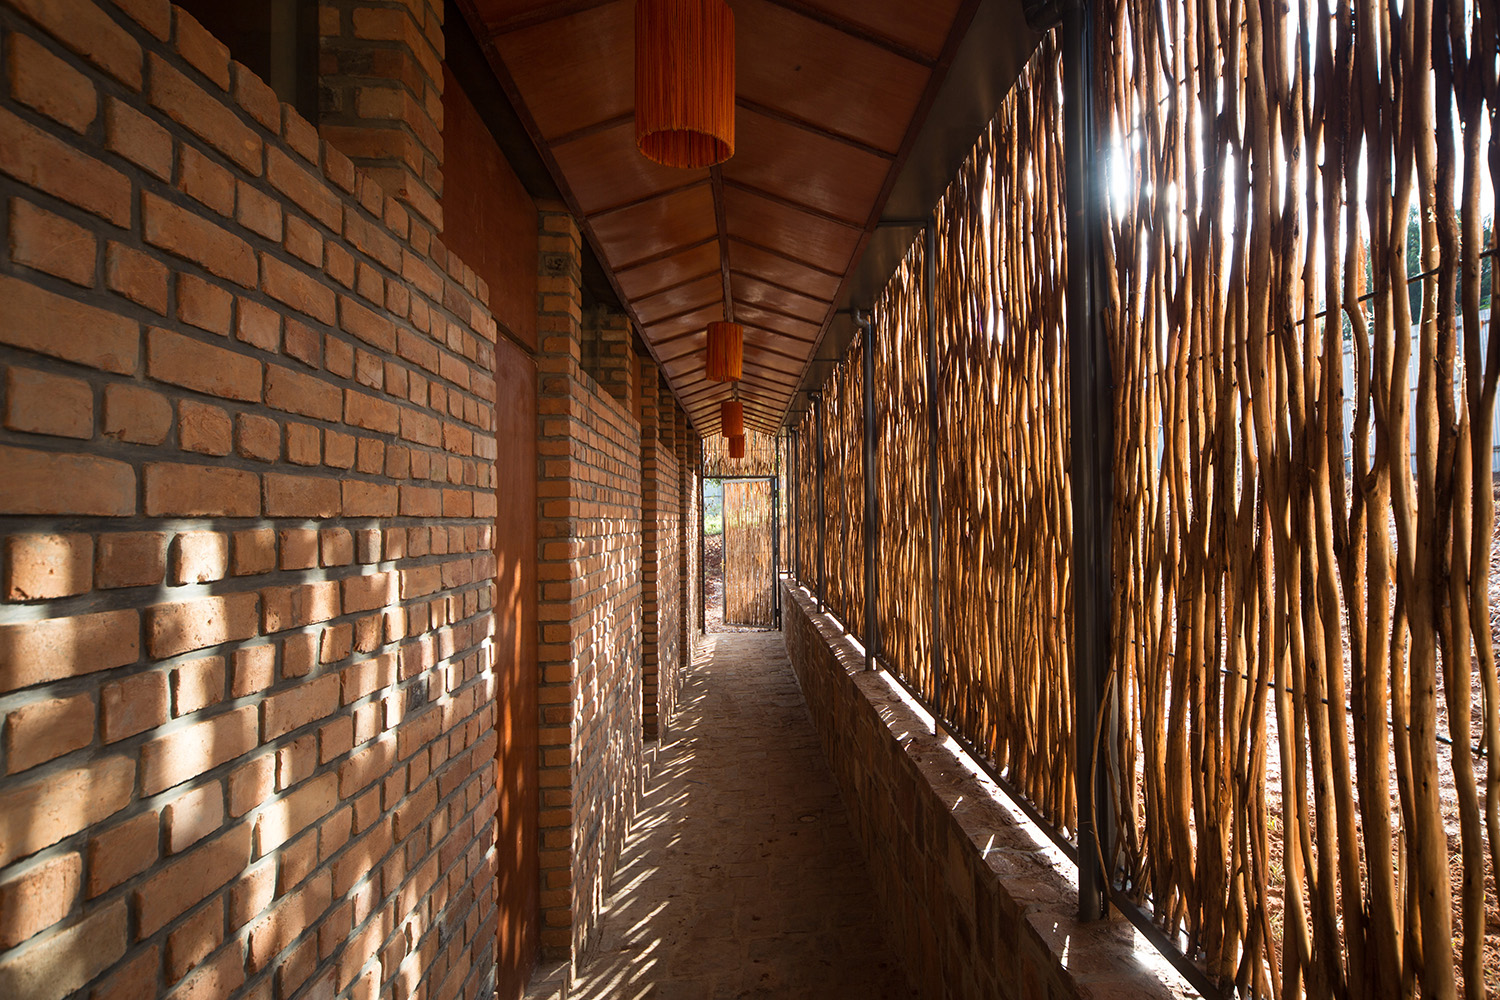 Eucalyptus screen creates privacy along bedroom corridor